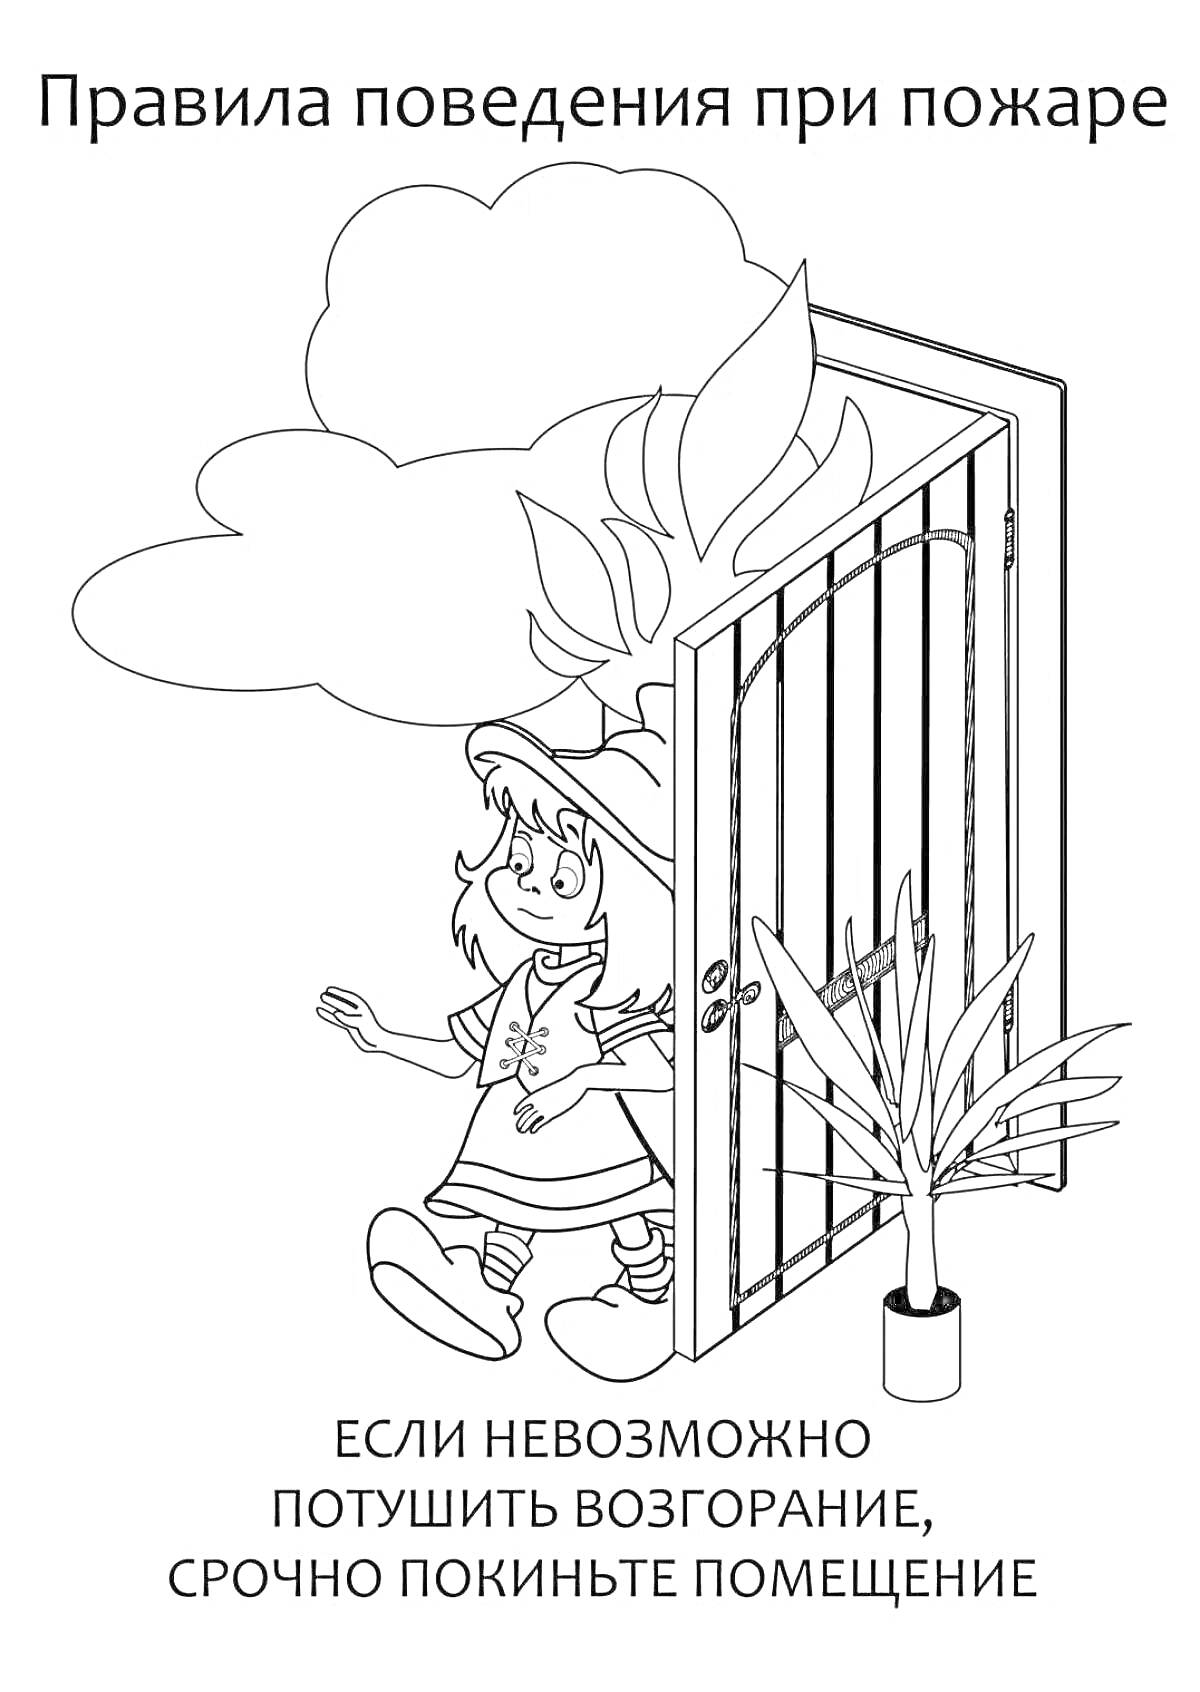 На раскраске изображено: Безопасность, Ребенок, Пожар, Эвакуация, Дым, Дверь, Правила поведения